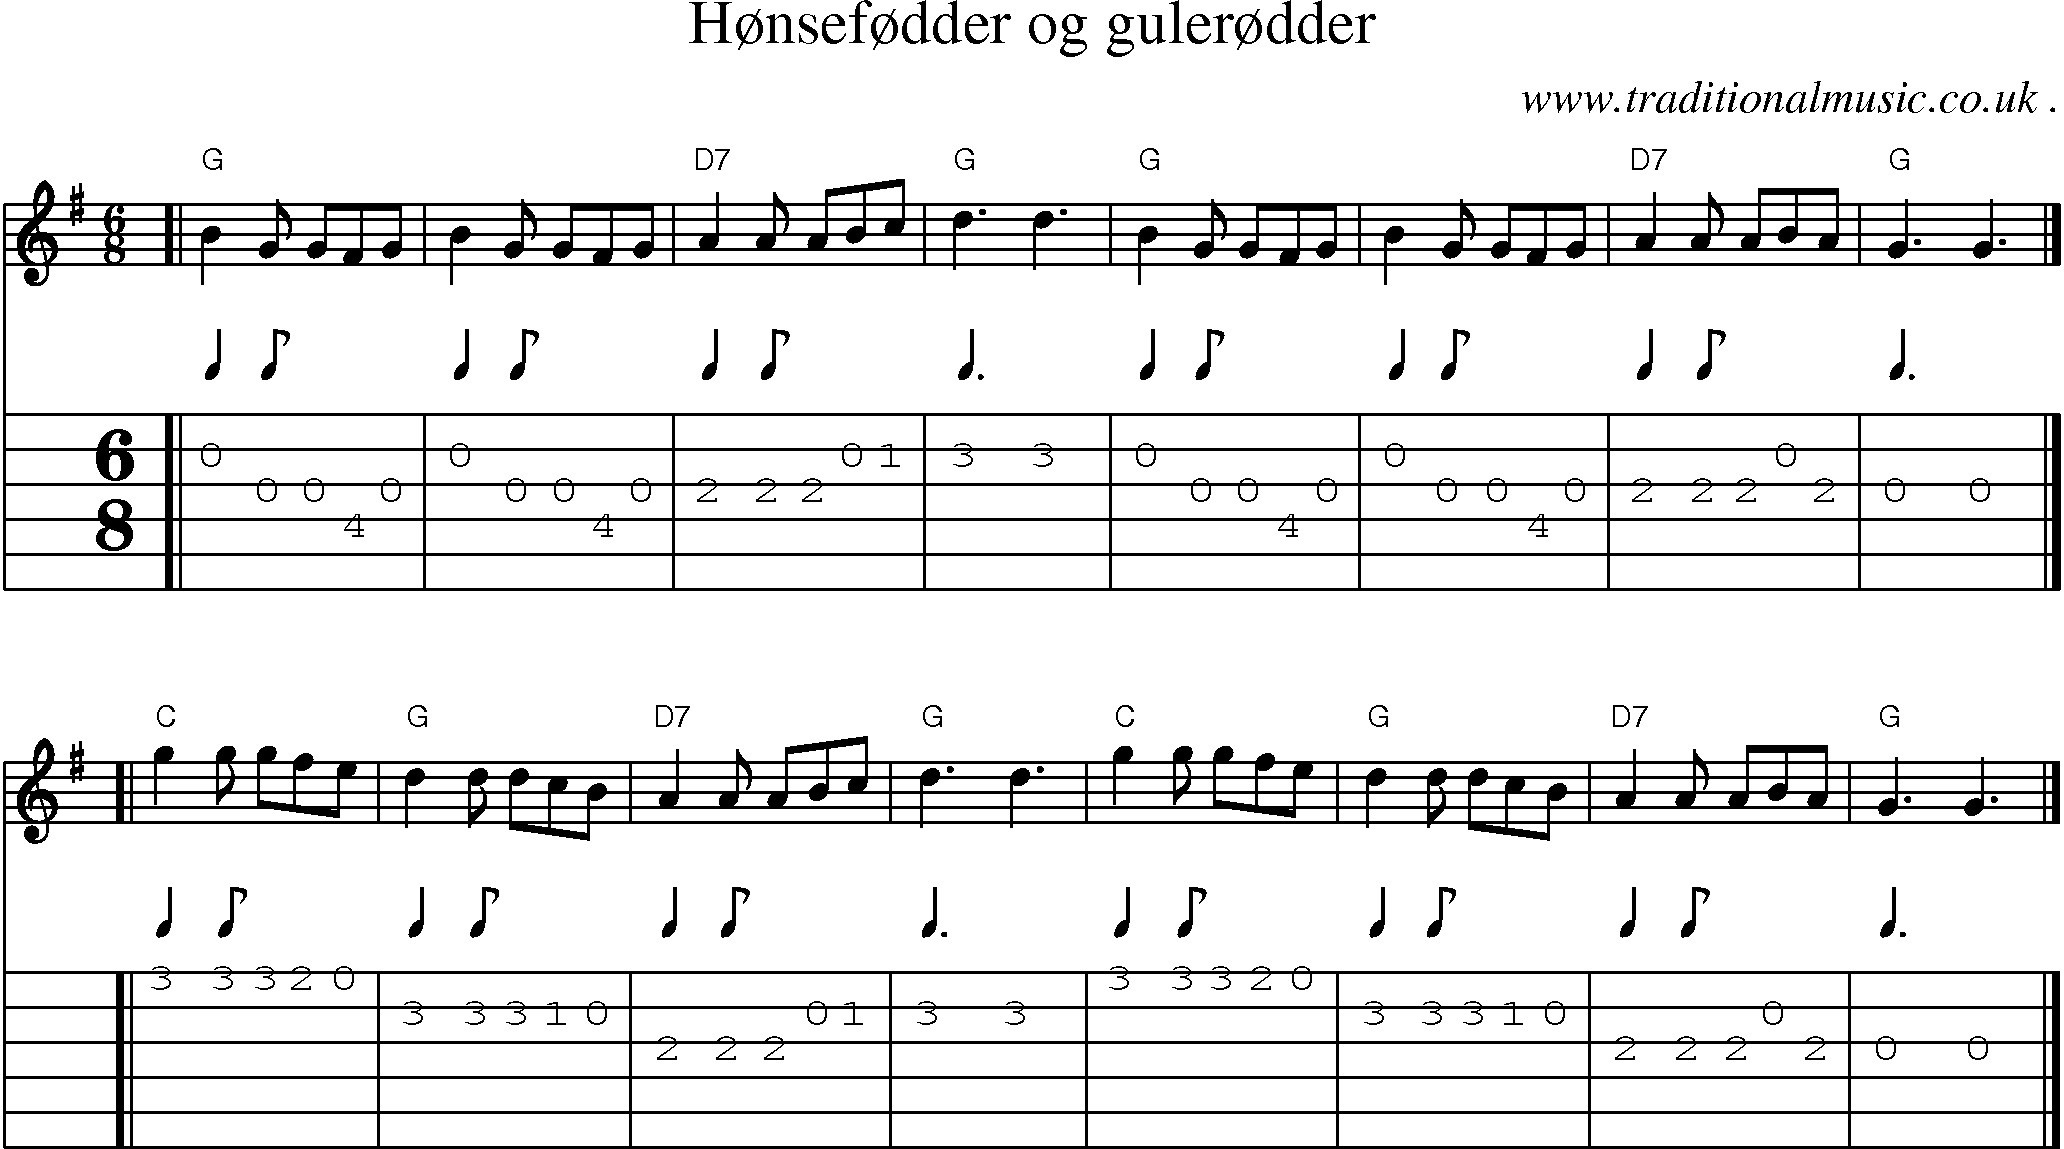 Sheet-music  score, Chords and Guitar Tabs for Honsefodder Og Gulerodder